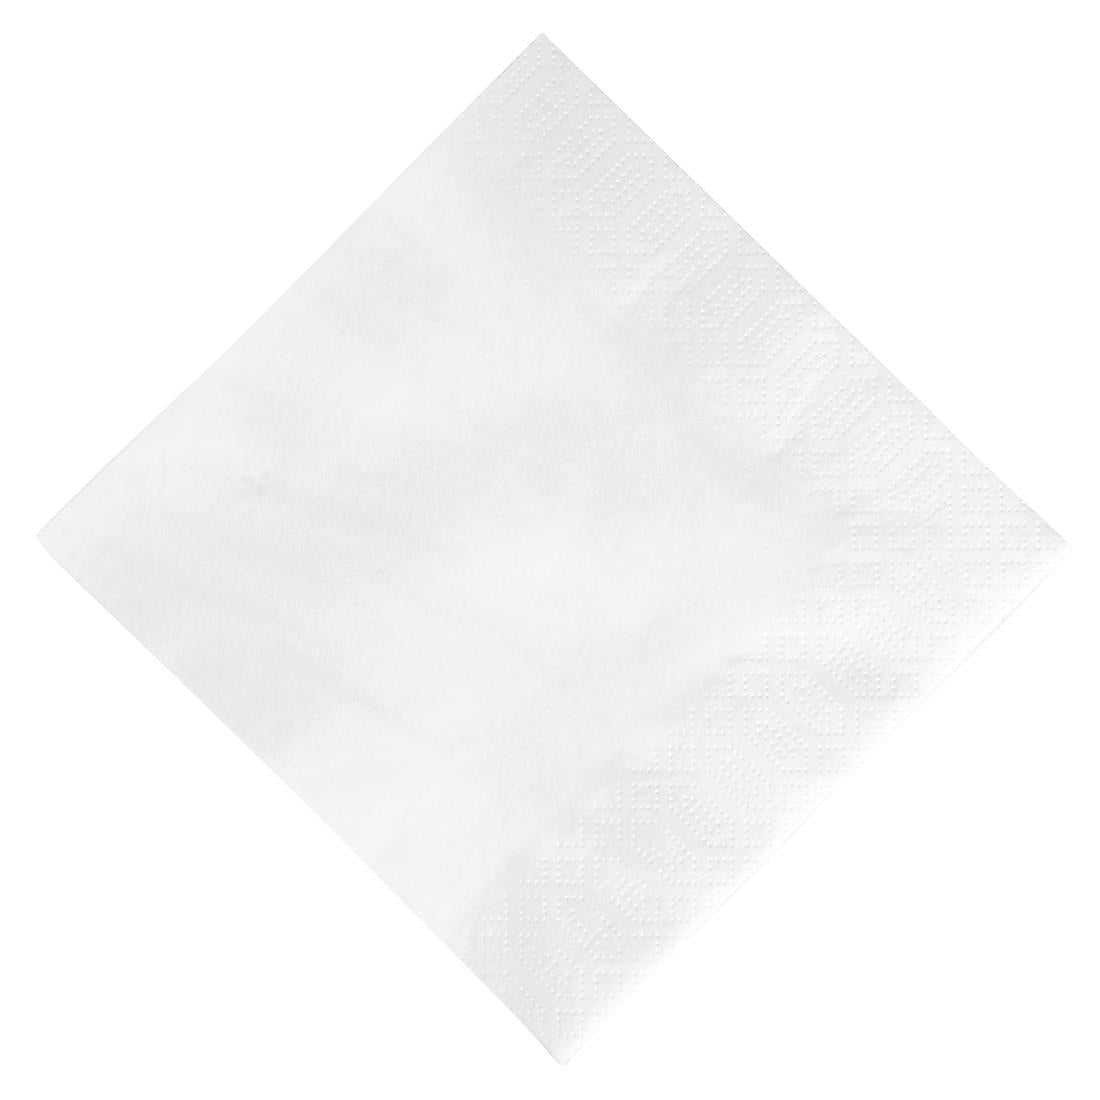 GJ108 Duni Lunch Napkin White 33x33cm 3ply 1/4 Fold (Pack of 1000)